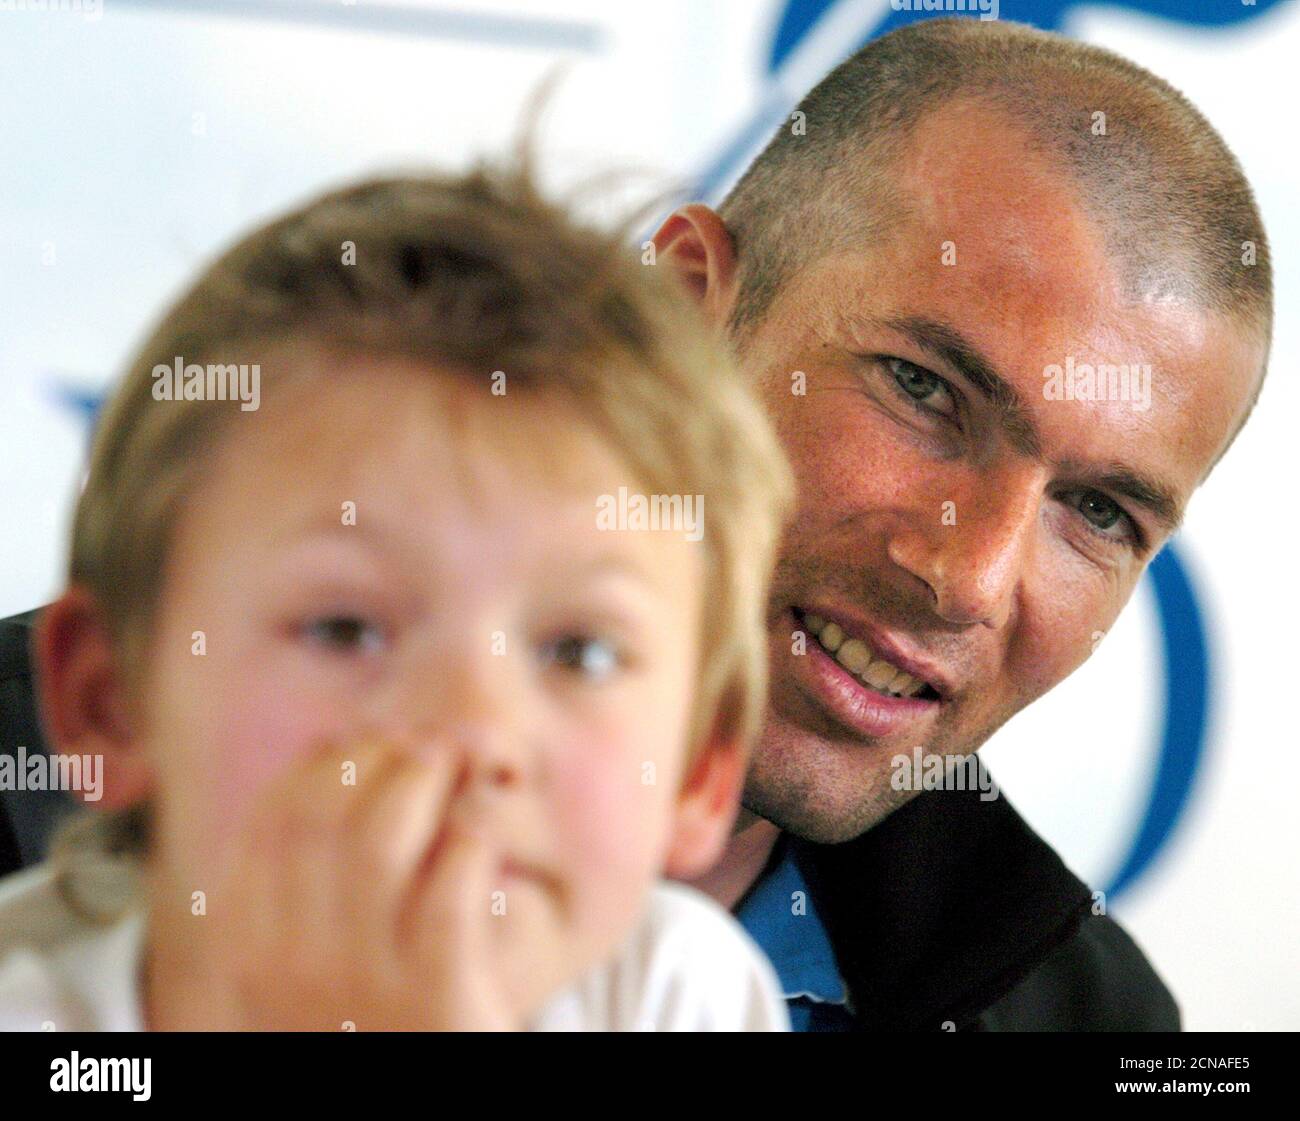 La jugadora francesa del Real Madrid Zinedine Zidane posó con Yan, un niño de nueve años de edad que sufre de Leucodistrofias, en una promoción de libros benéficos en la clínica de Genolier en Genolier, Suiza, el 10 de mayo de 2004. El libro recientemente presentado 'Tous en canastas' (traducido aproximadamente 'unir en la lucha') reúne a 85 portaits de actores y deportistas famosos posando con el mismo par de botas de Zinedine Zidane. El beneficio del libro será donado a la Asociación Europea de Leucodistrofías, una organización patrocinada por Zinedine Zidane. Las leucodistrofias son enfermedades genéticas que destruyen lo central Foto de stock